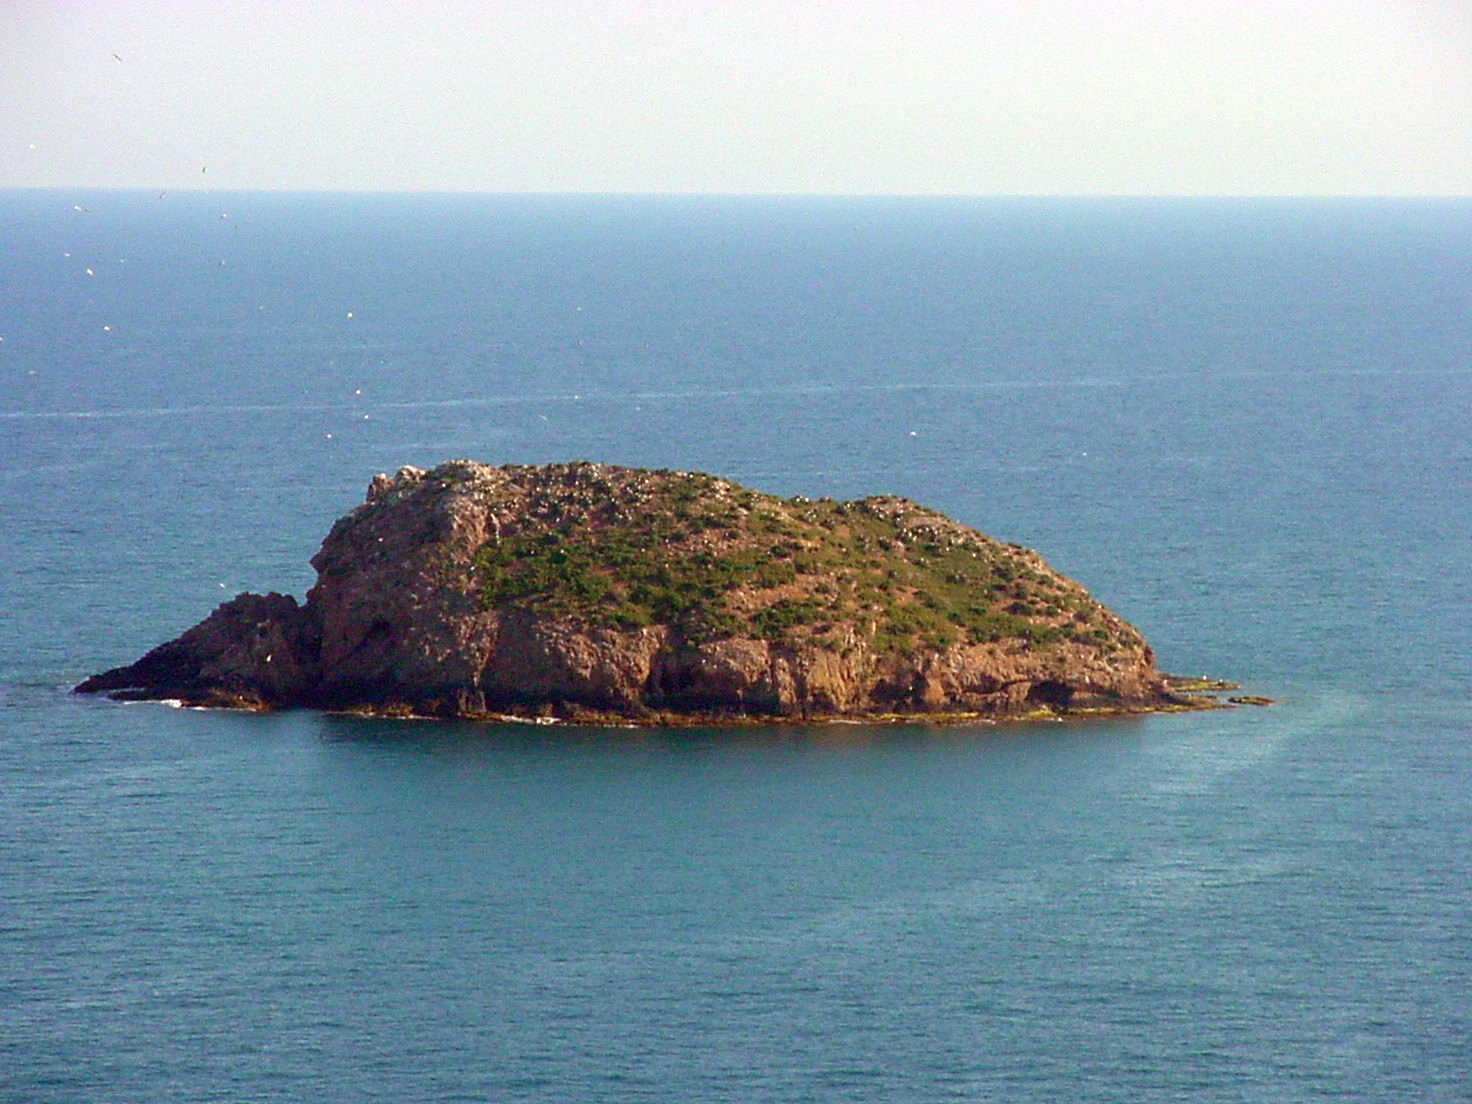 Ampliar imagen: fotografía aérea de un islote de origen volcánico situado en la costa